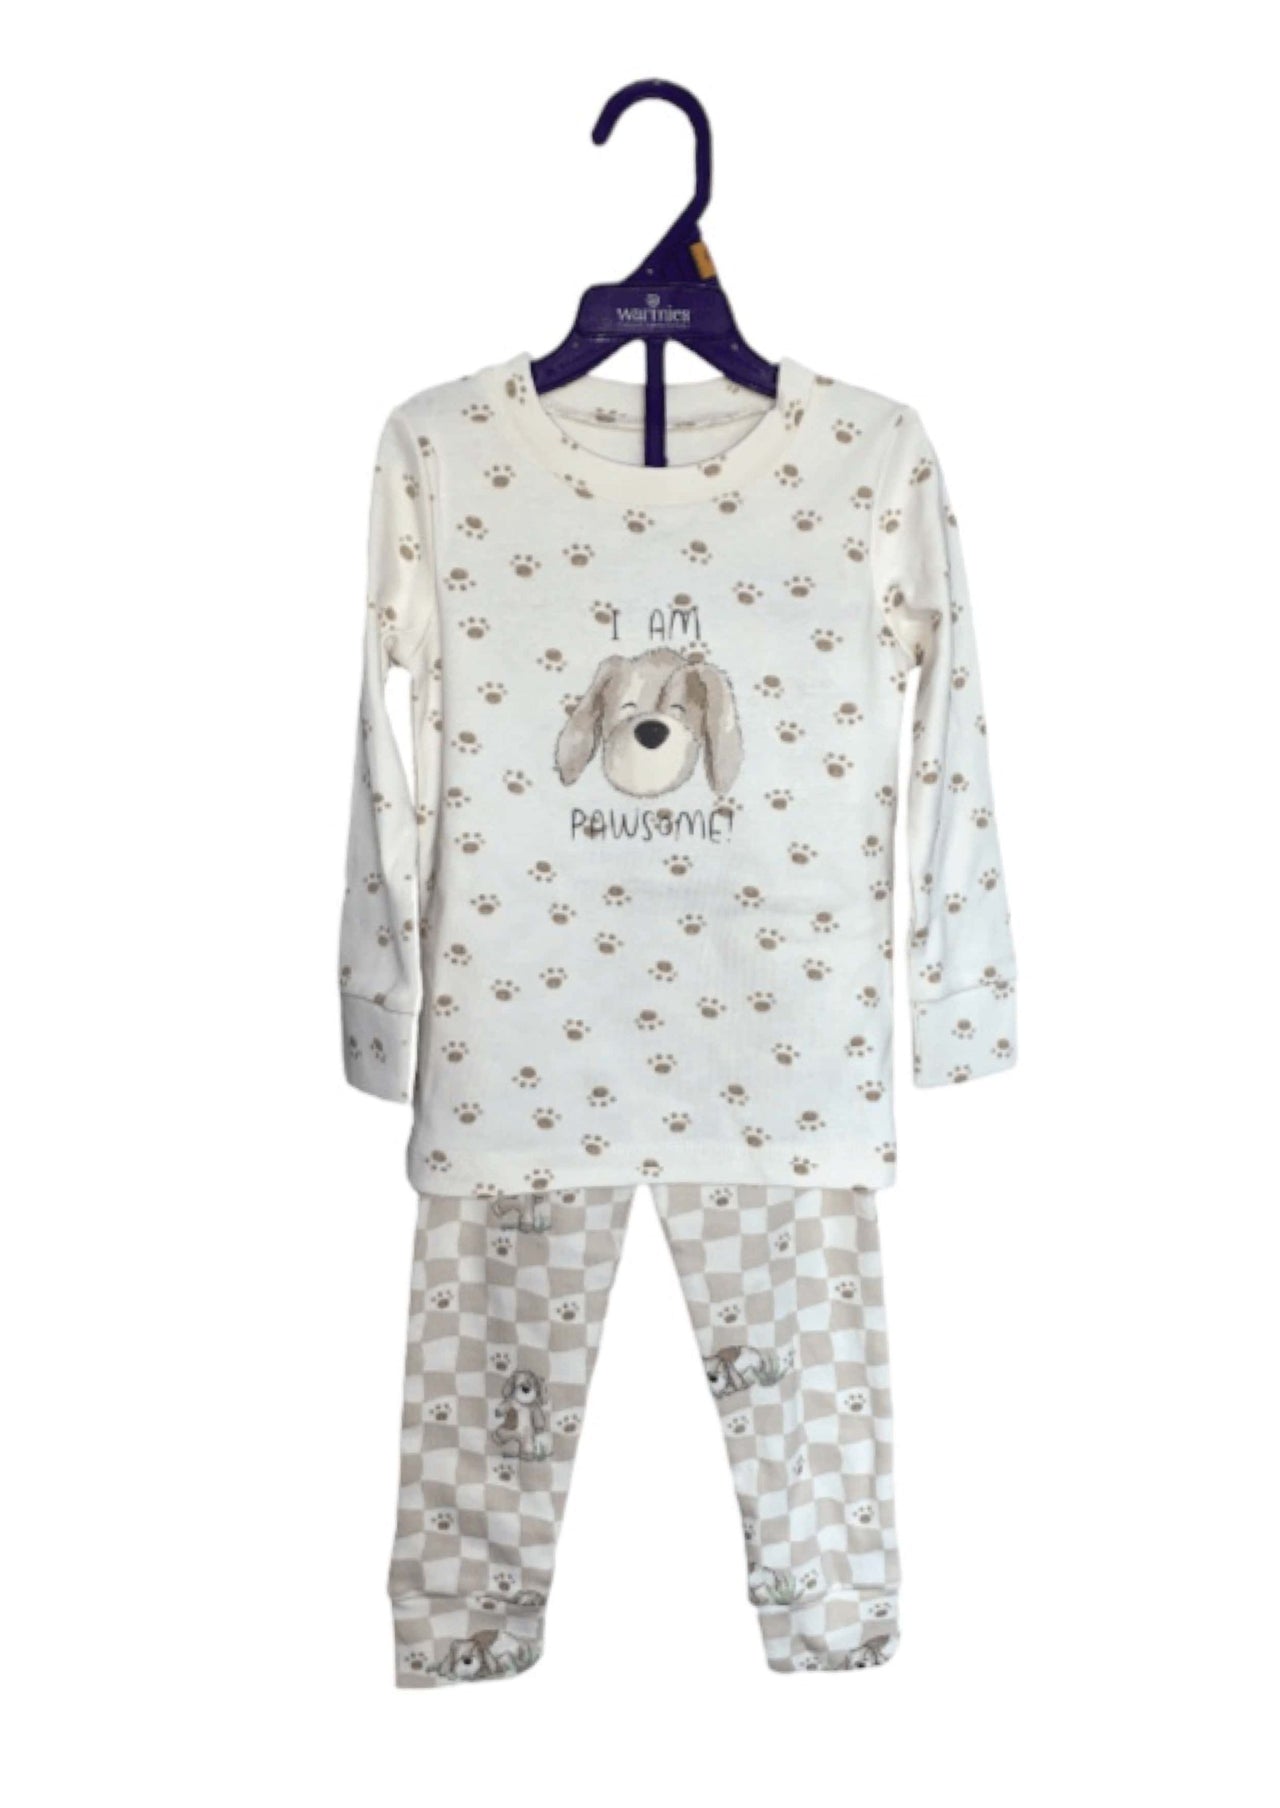 Warmies Puppy Toddler Pajama Sets INTELLEX/Warmies CHILDREN